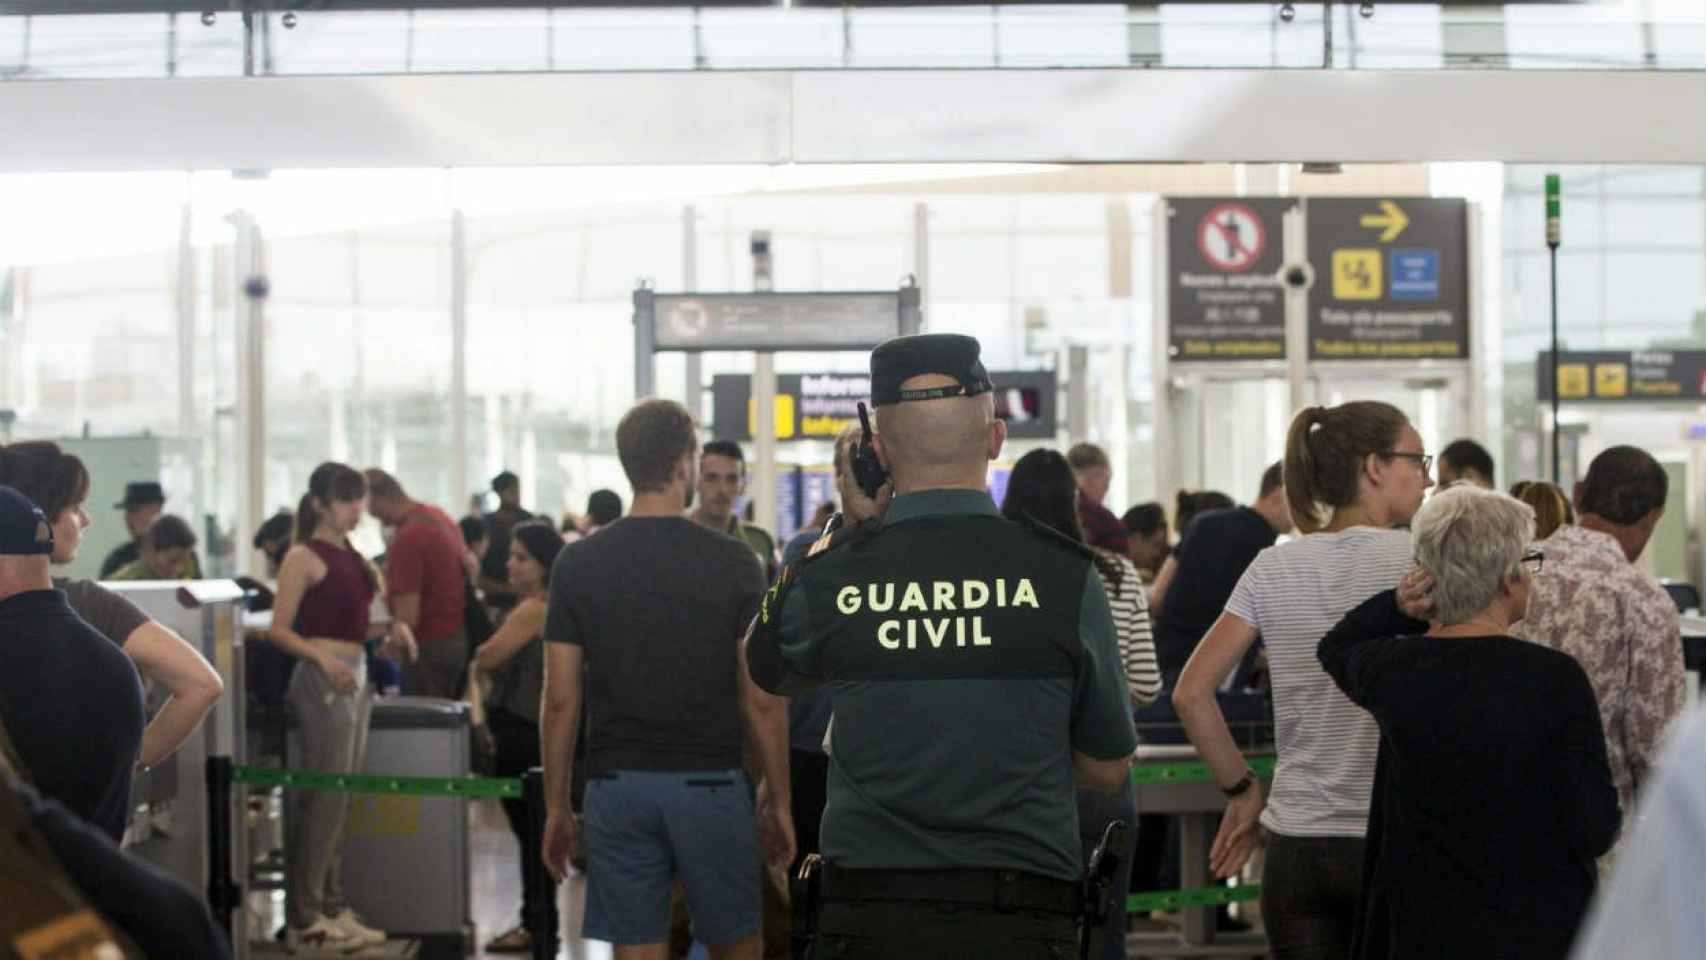 La Guardia Civil ha detenido a una persona con 3,5 kilos de heroína en el aeropuerto de El Prat / EFE